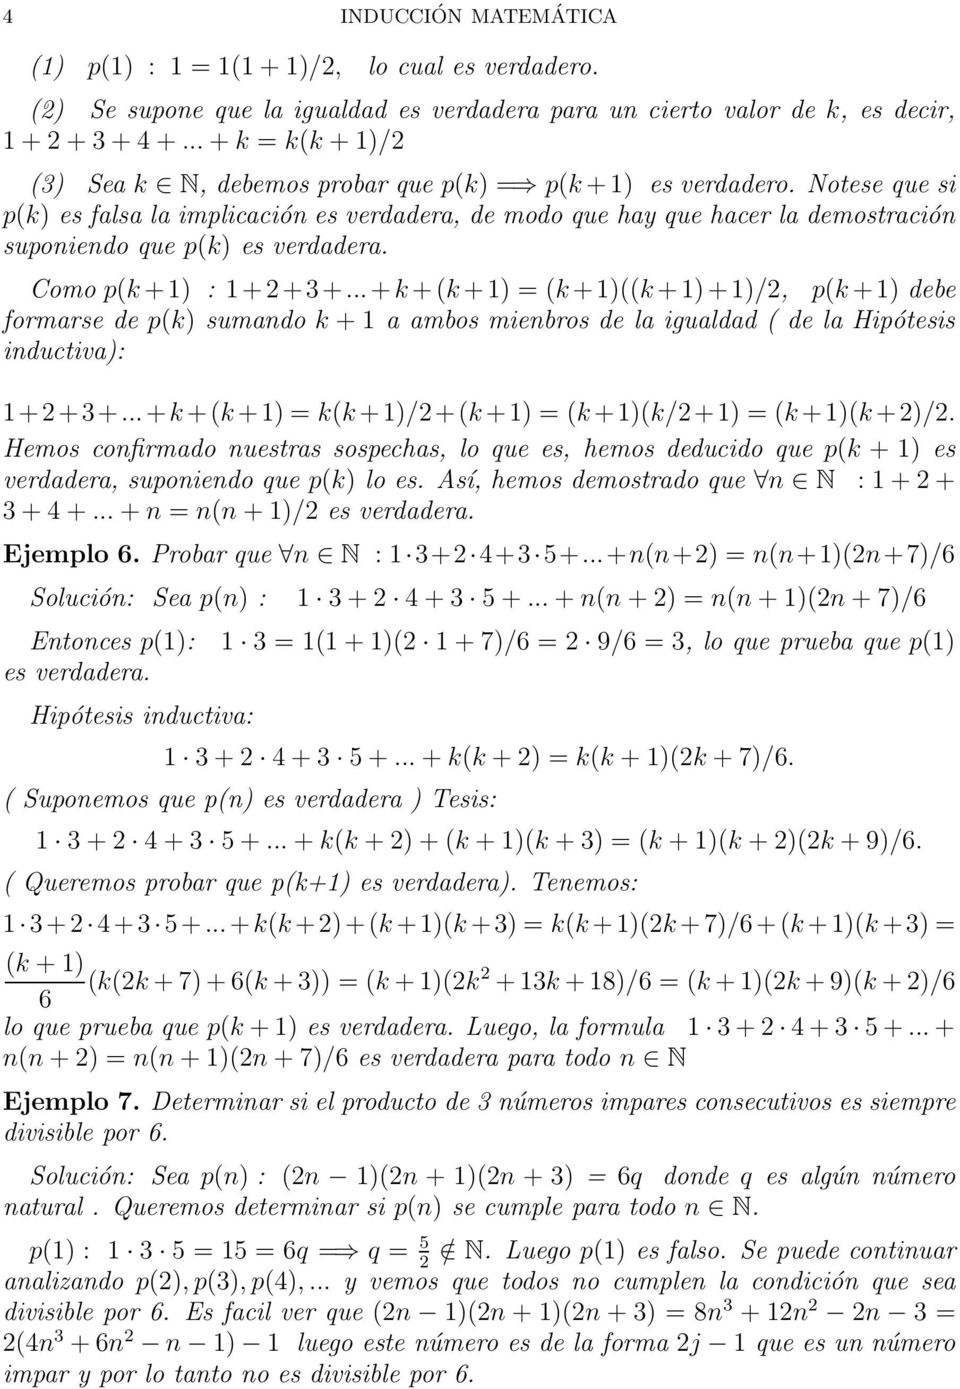 .. + + + = + + + /, p + debe formarse de p sumado + a ambos miebros de la igualdad de la Hipótesis iductiva: +++...+ + + = +/+ + = +/+ = + +/.